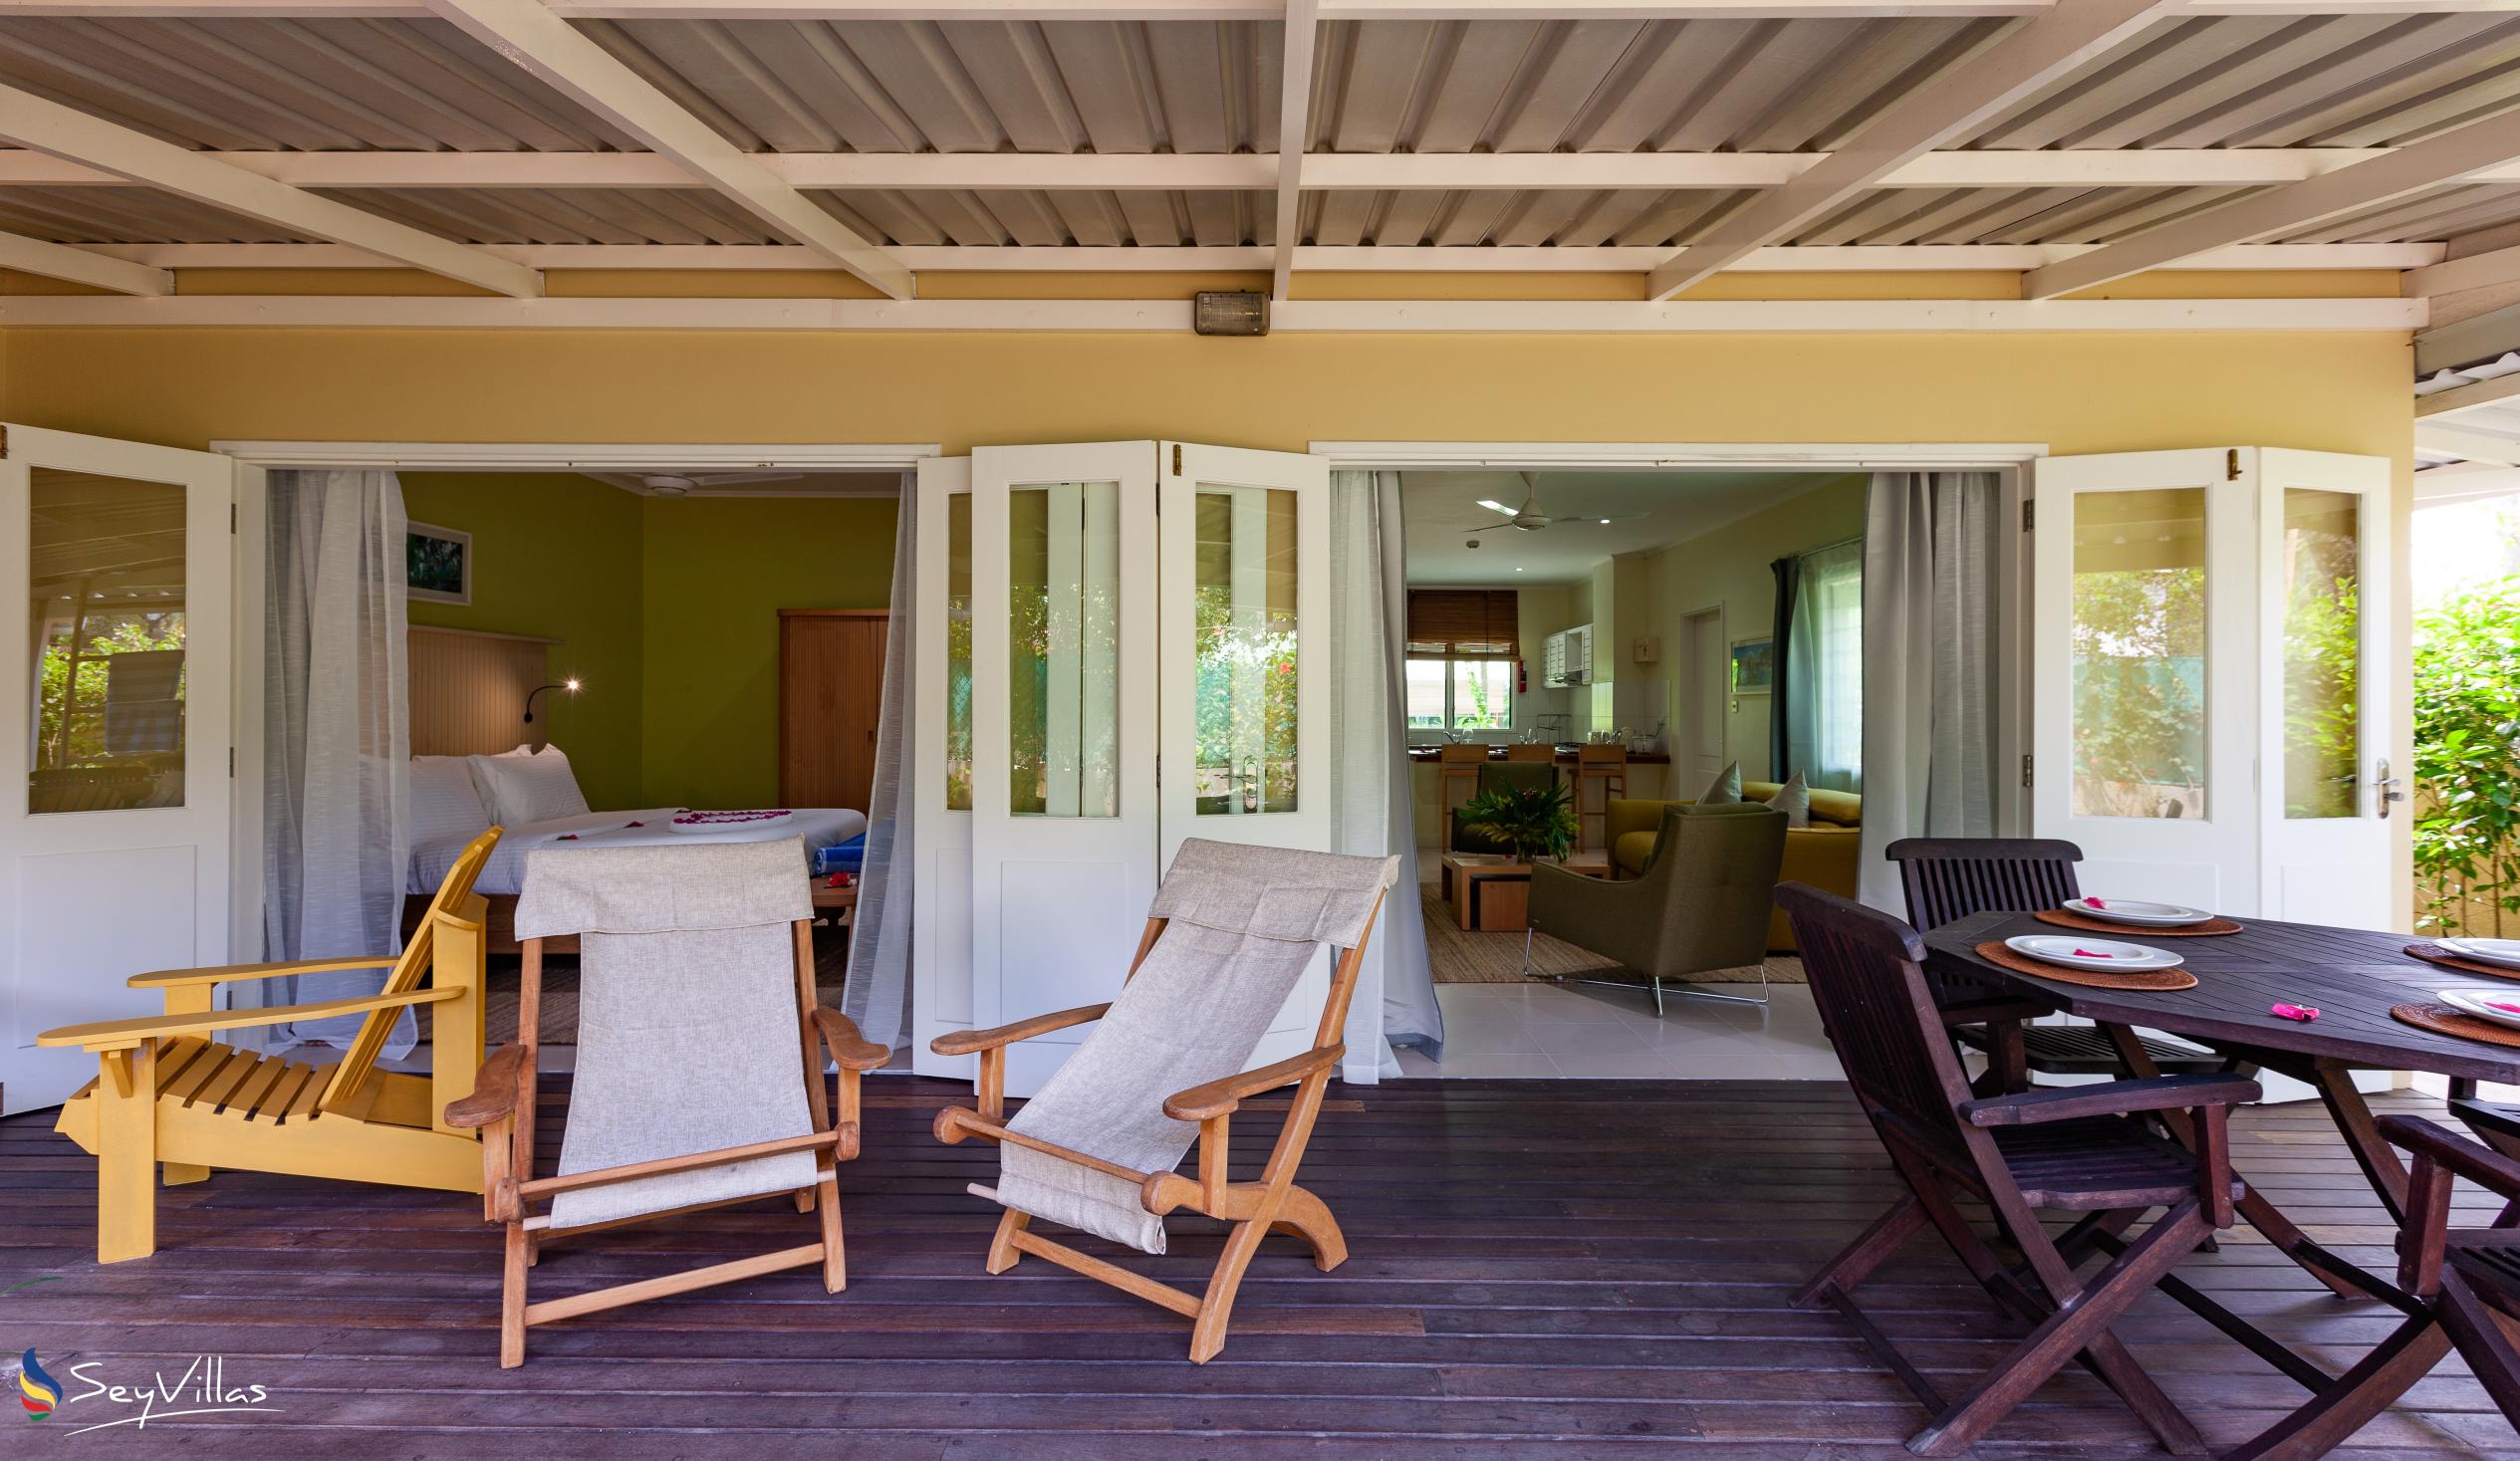 Foto 43: Residence Praslinoise - Familienappartement mit 2 Schlafzimmern (EG) - Praslin (Seychellen)